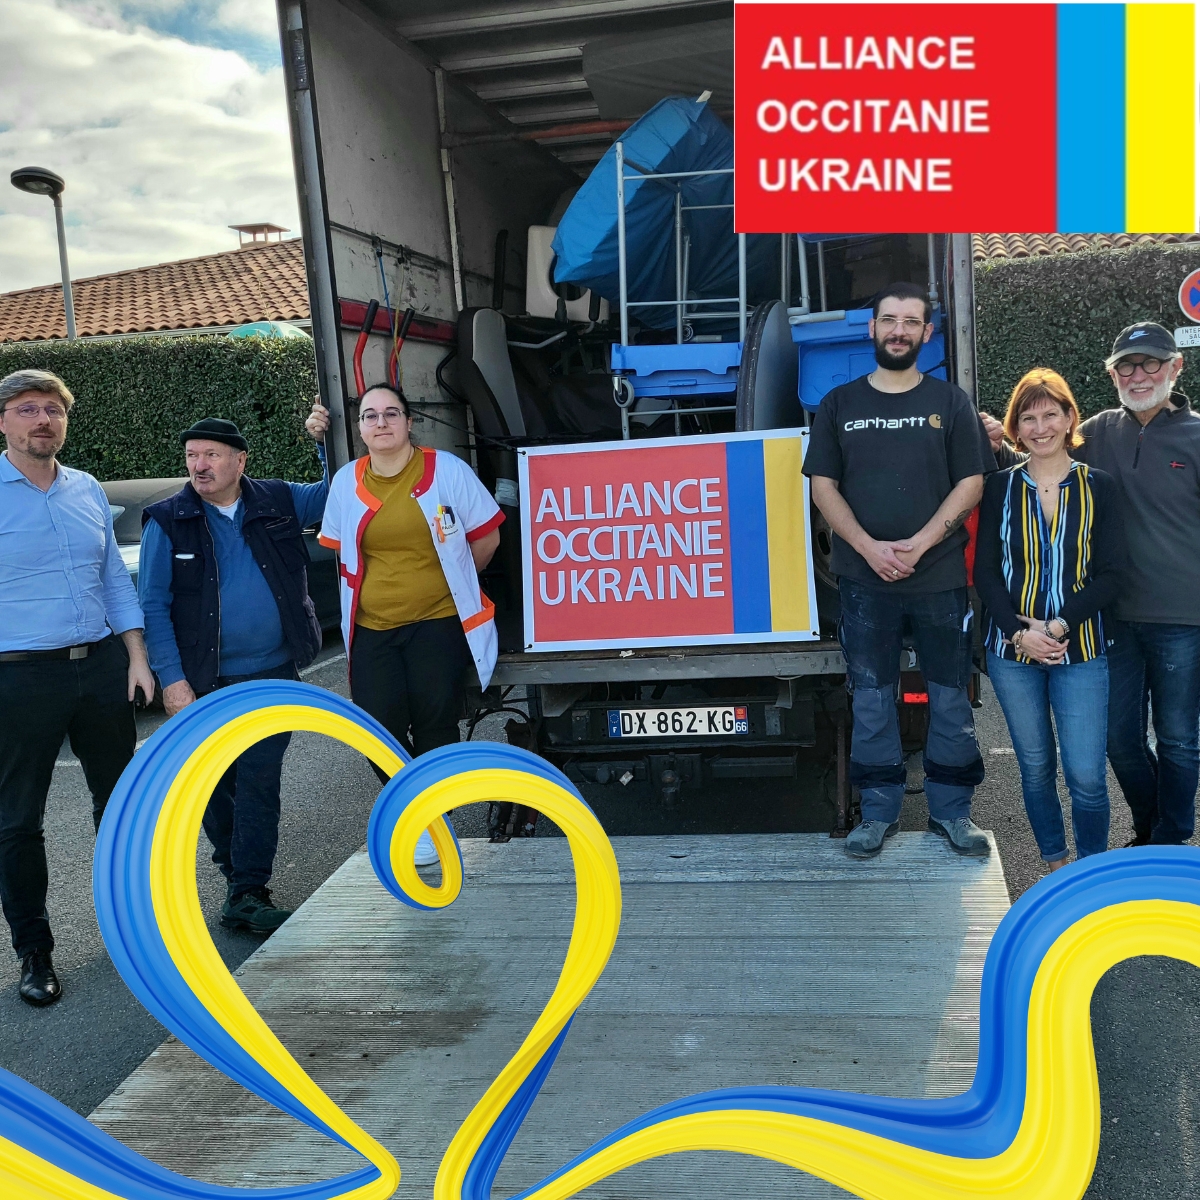 Solidarité et Engagement : Une Collaboration Entre Mutualité Française Grand Sud et Alliance Occitanie Ukraine